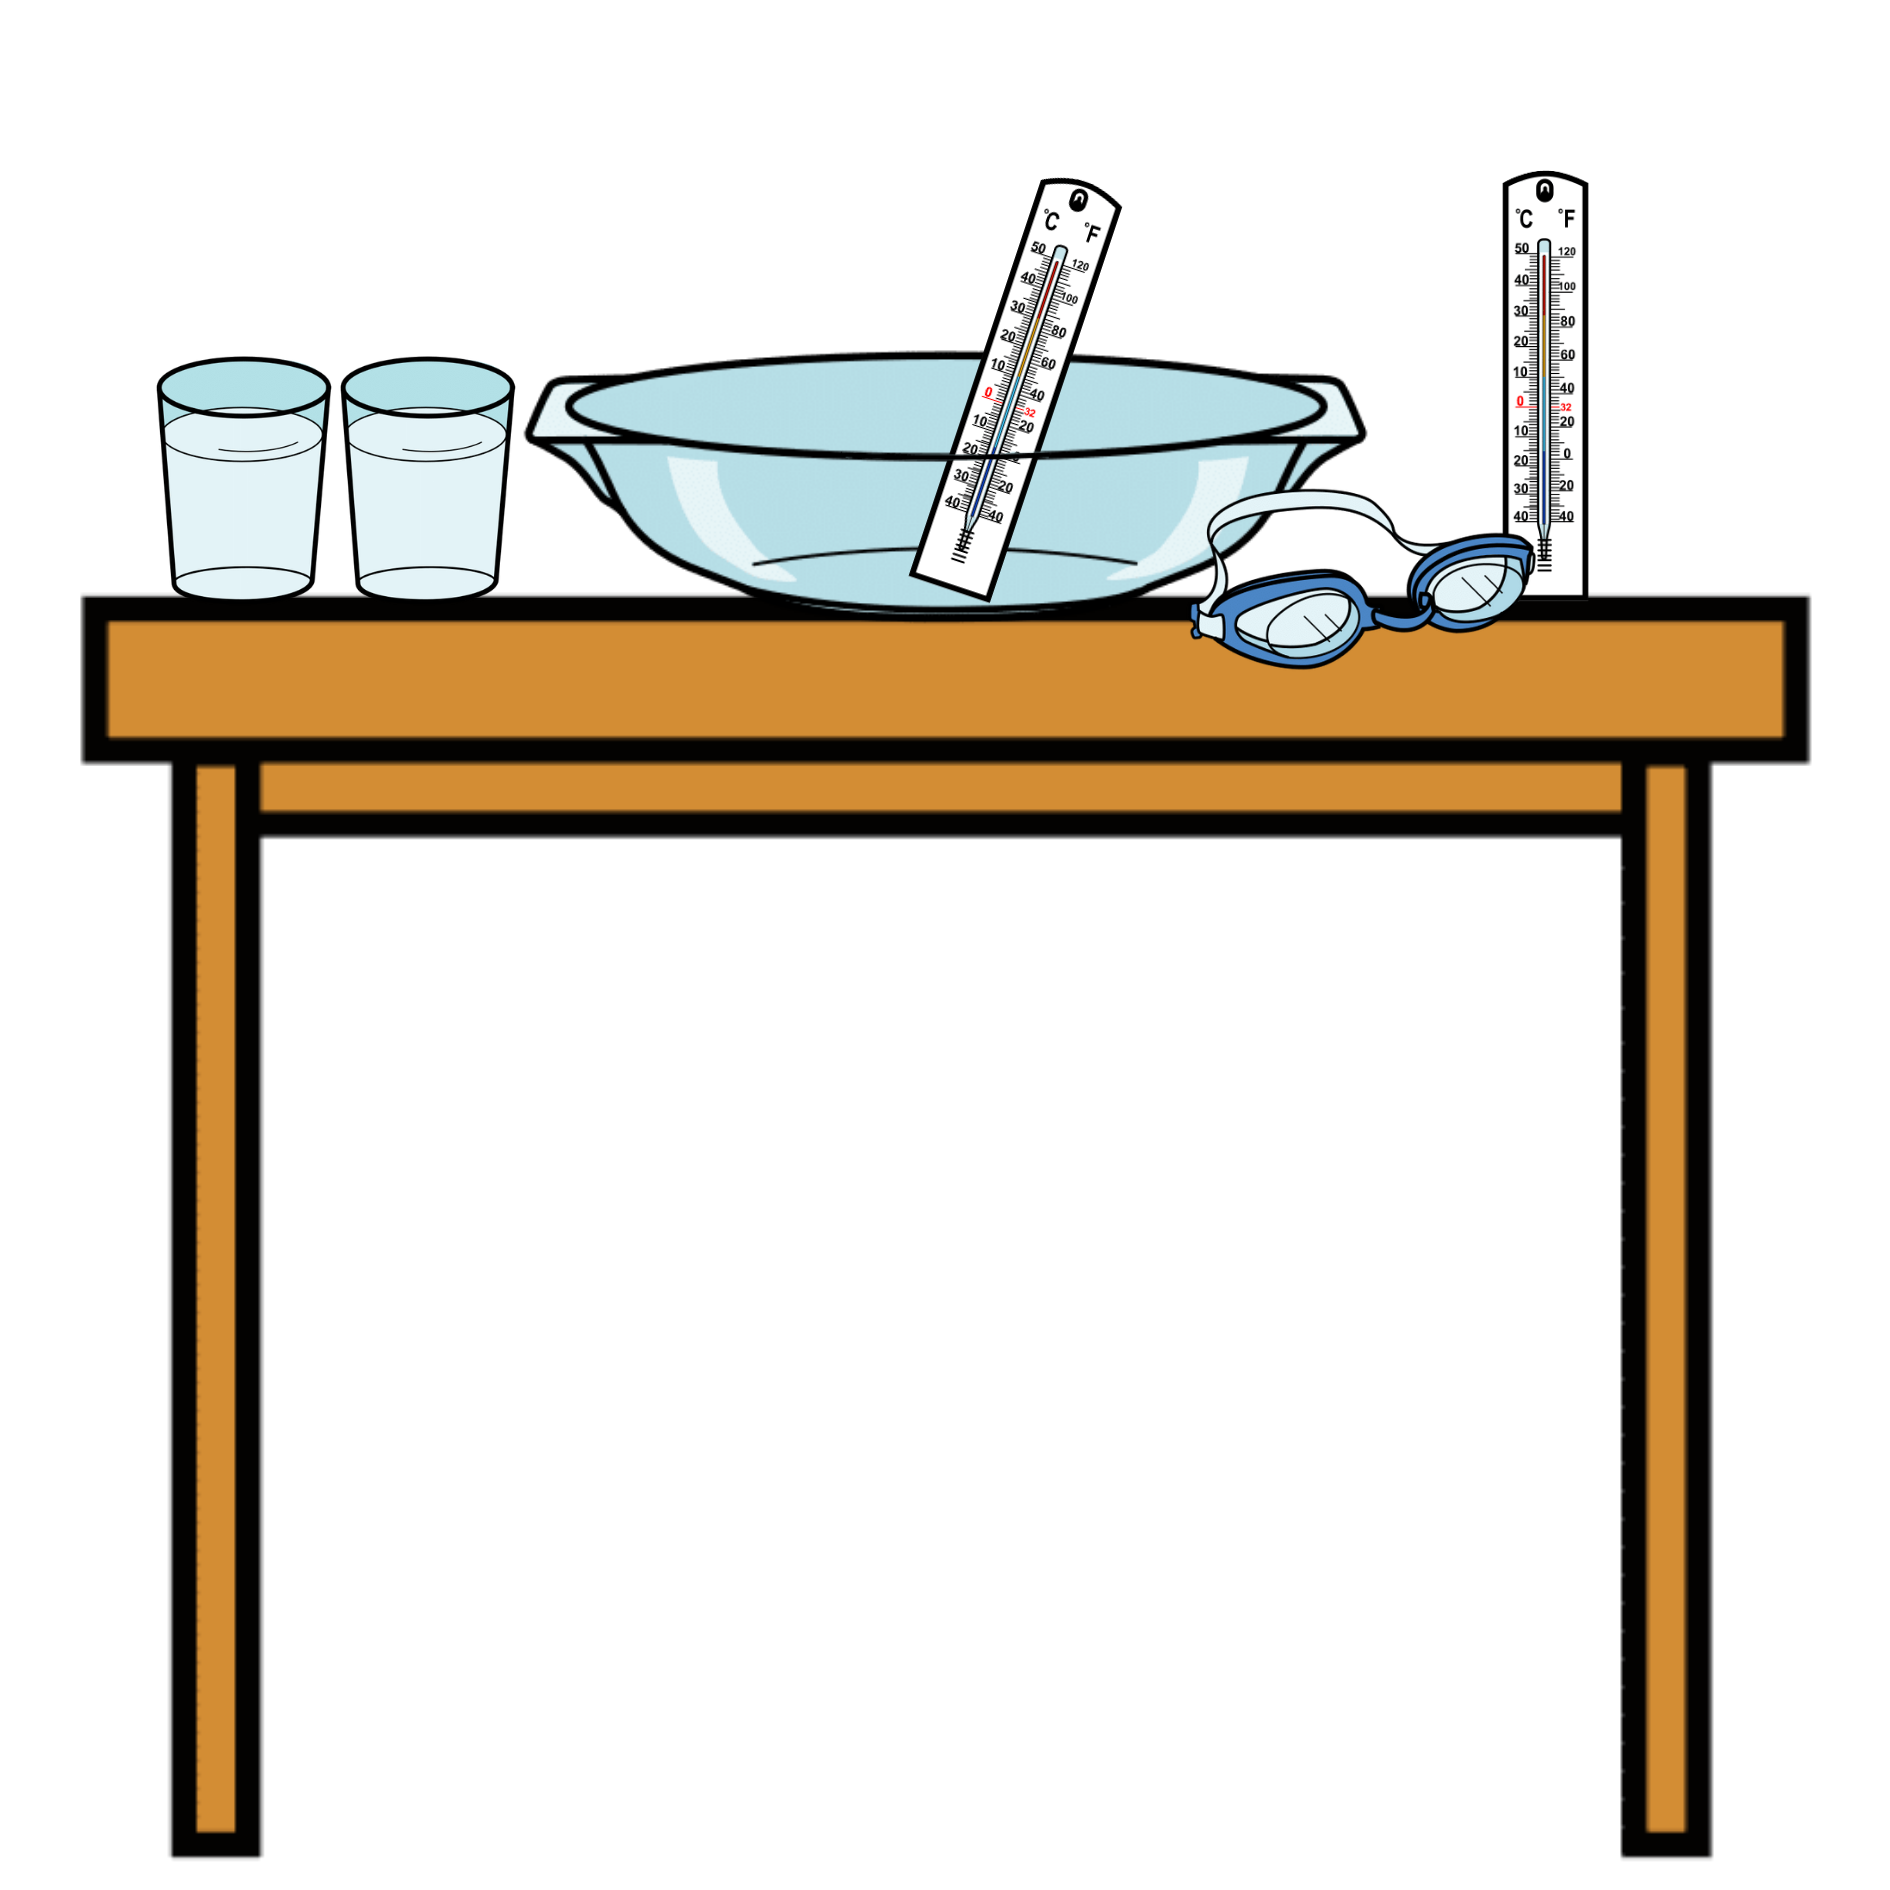 Dibujo de una mesa con los materiales para hacer el experimento: una fuente de cristal, dos termómetros, dos vasos con agua y unas gafas de agua.